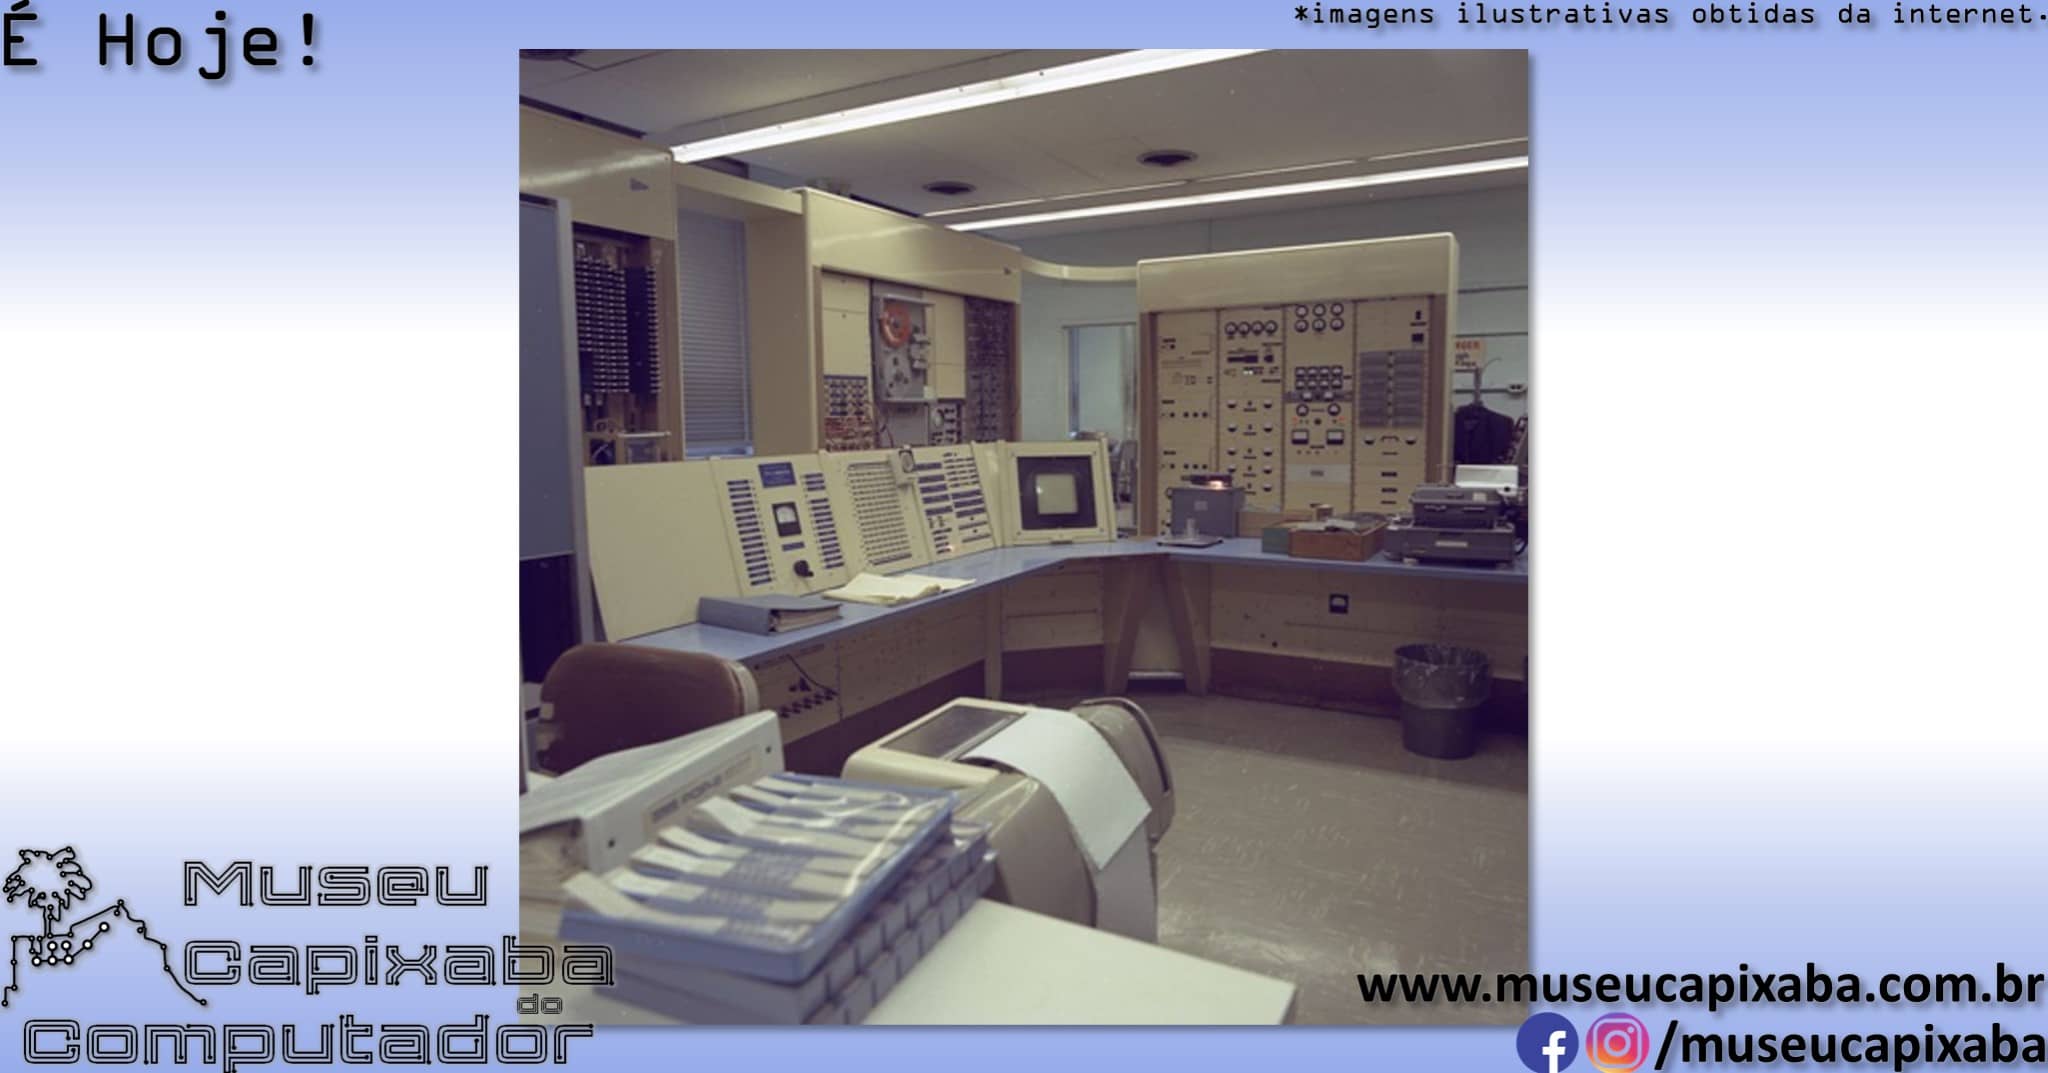 O termo hacker de computador de 1963 – MCC - Museu Capixaba do